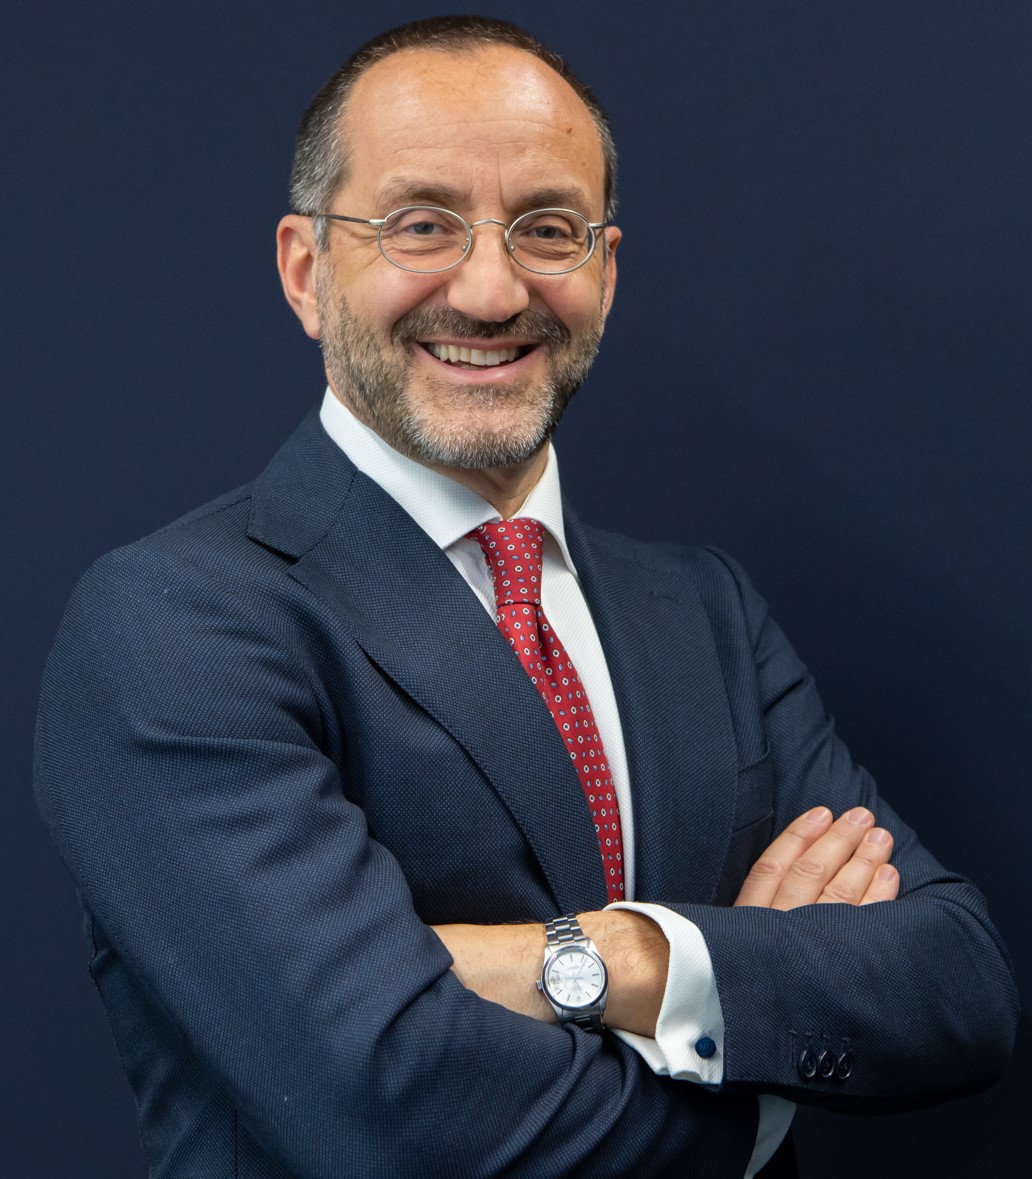 Fabrizio Greco (AbbVie Italia) è il nuovo presidente Assobiotec-Federchimica